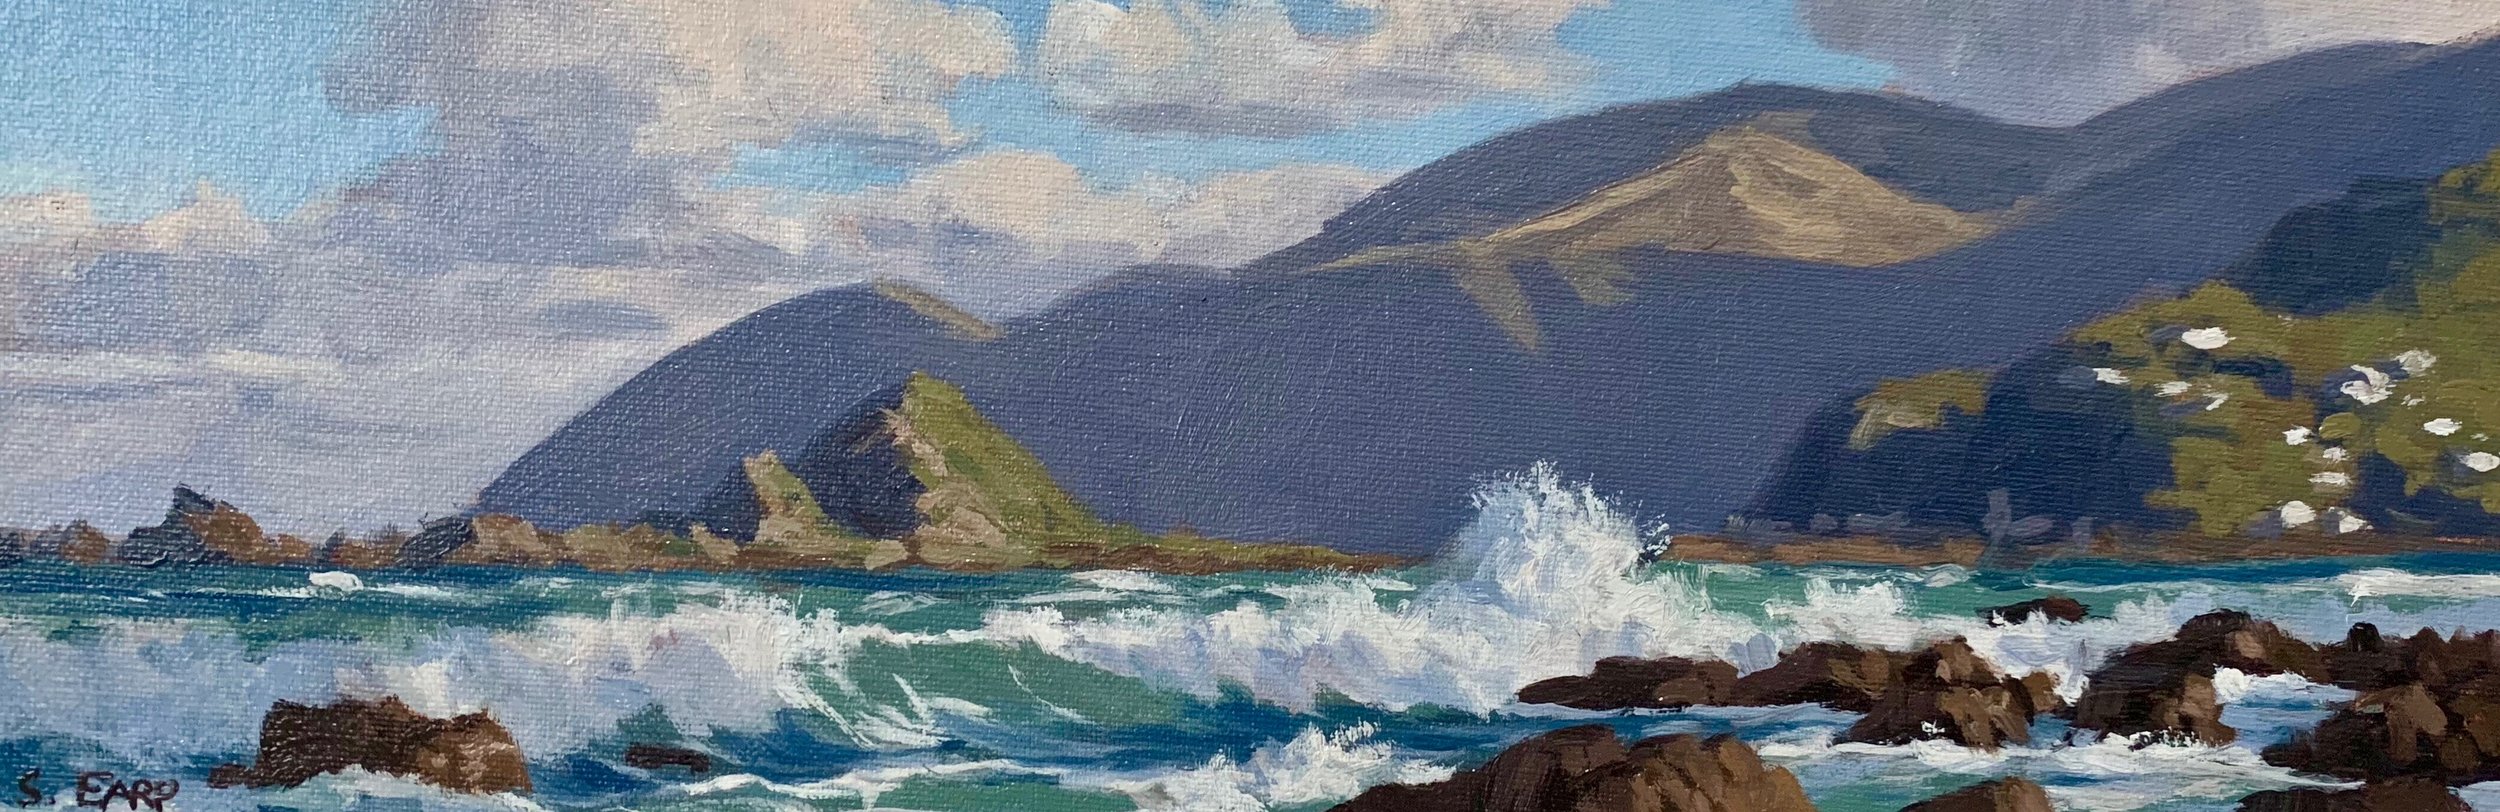 Wellington Coast - small oil painting - Samuel Earp - seascape artist 2.jpg